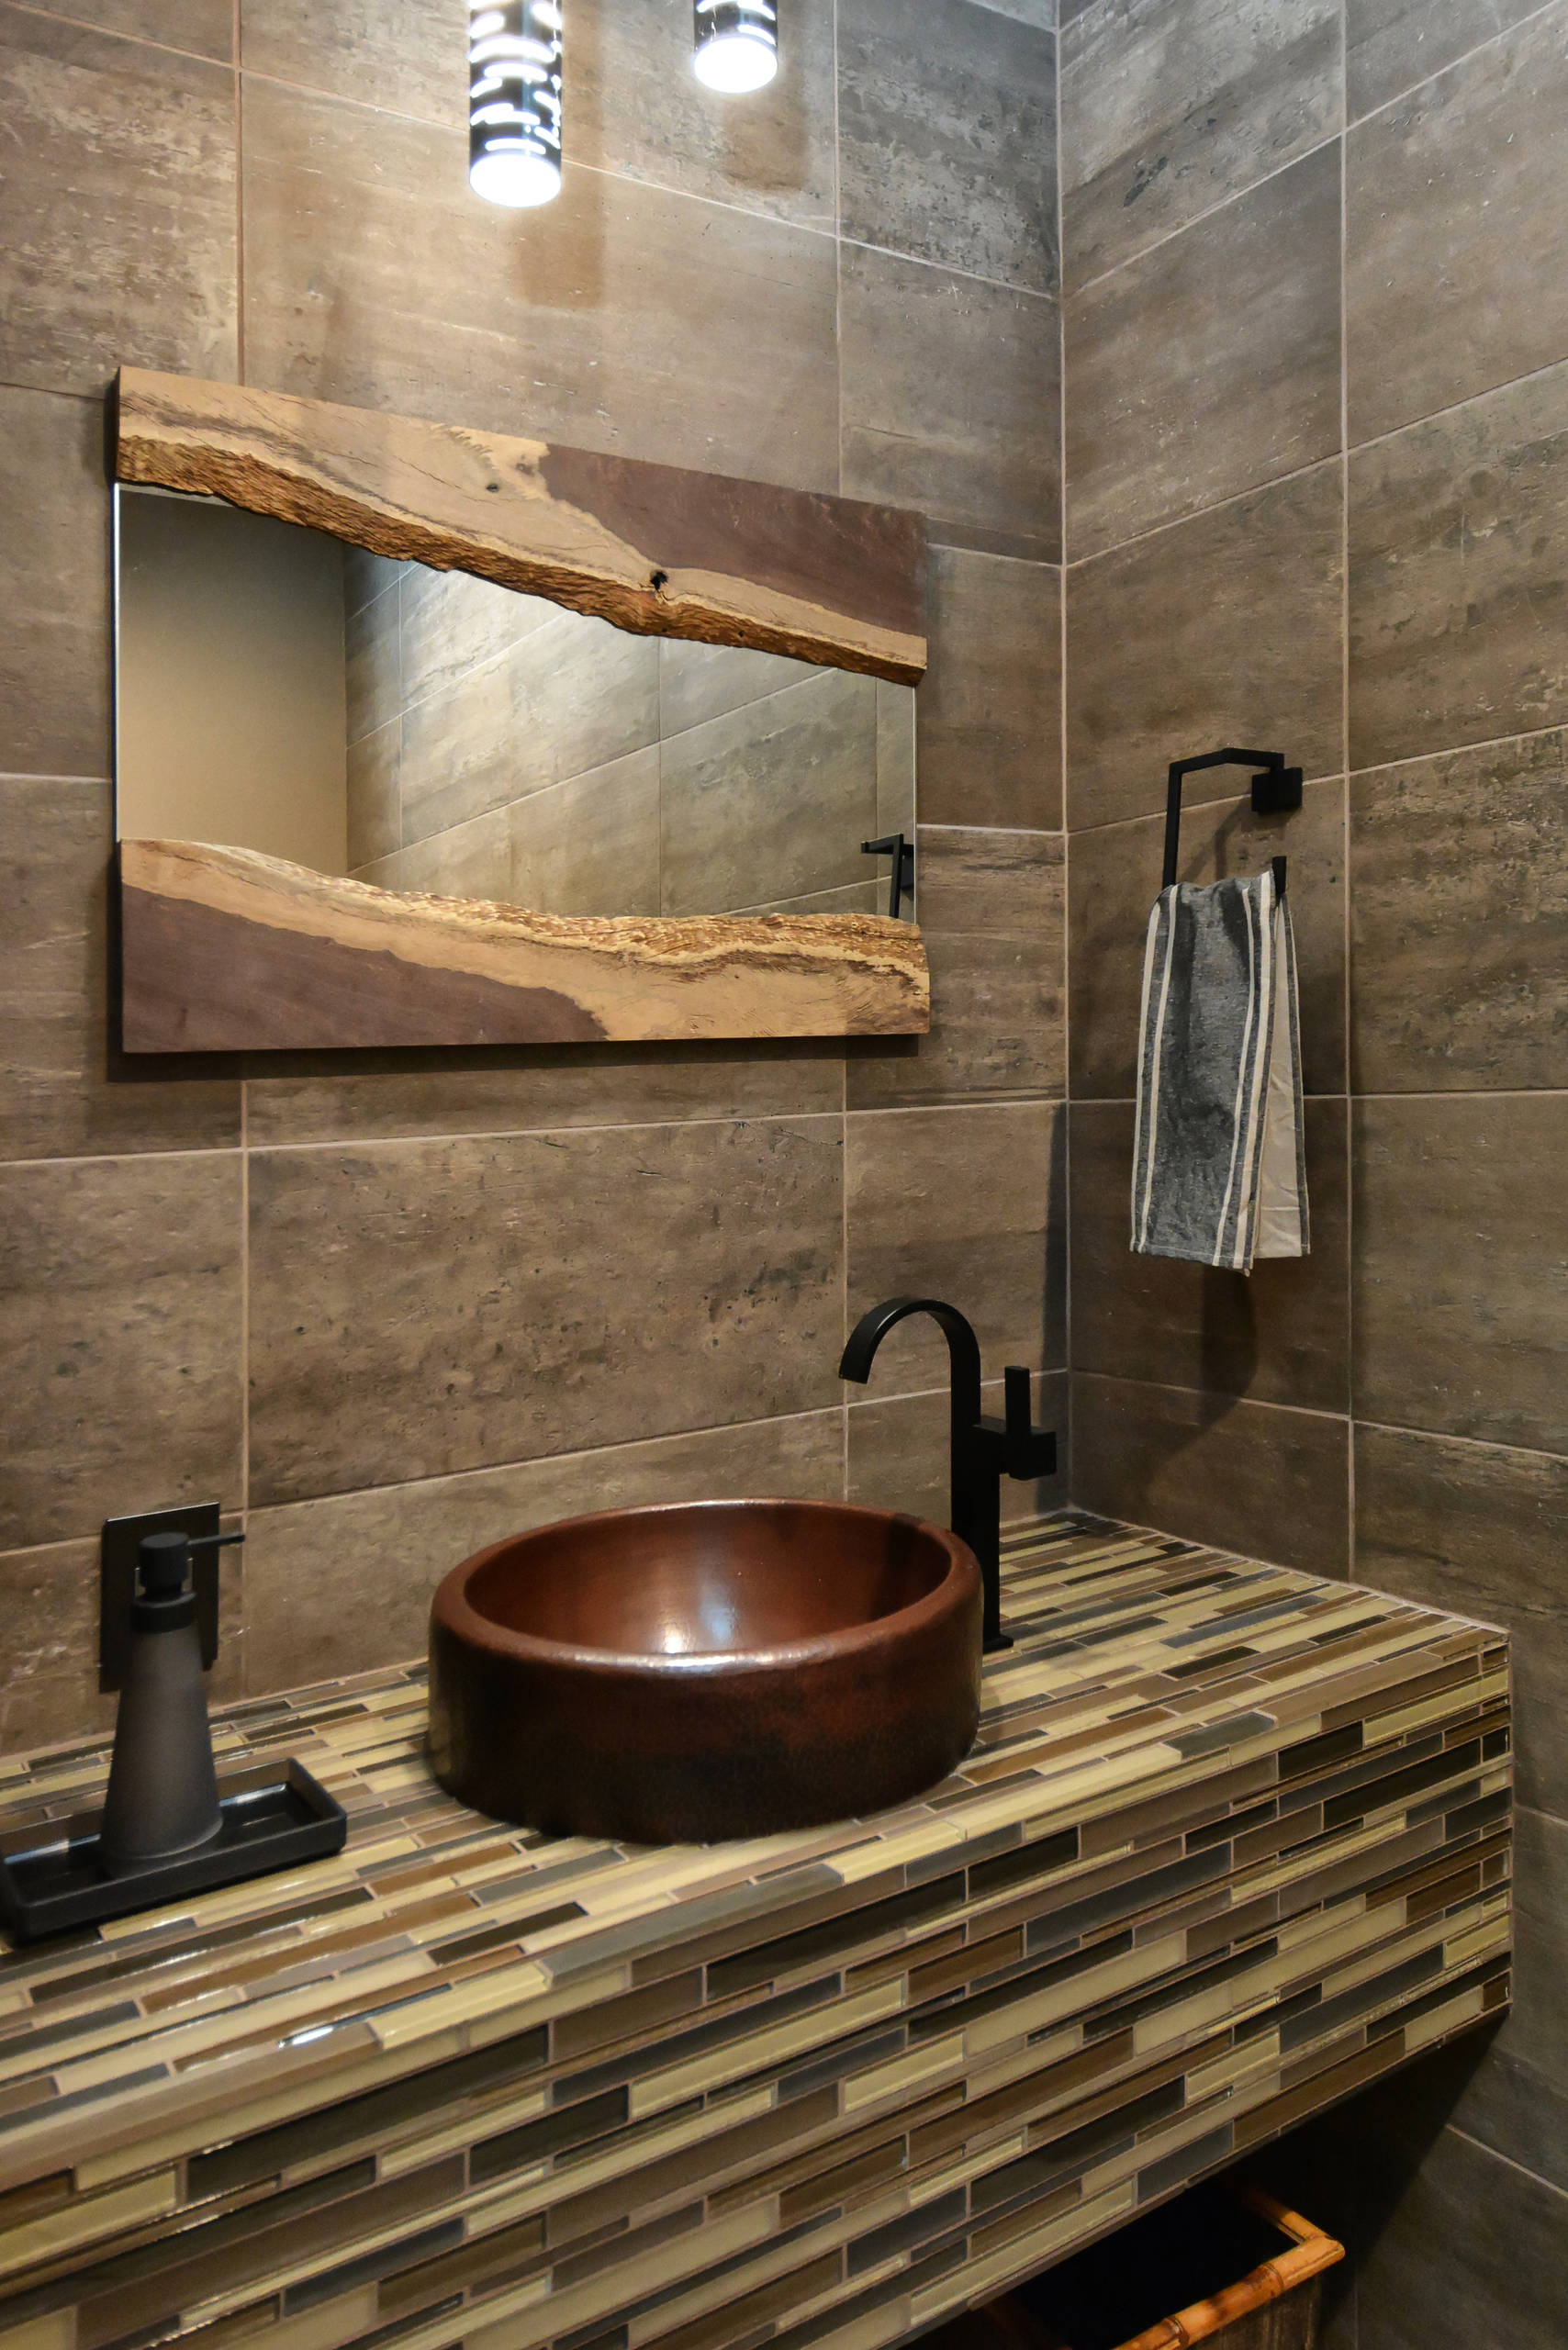 Details 100 wash basin background tiles design ideas